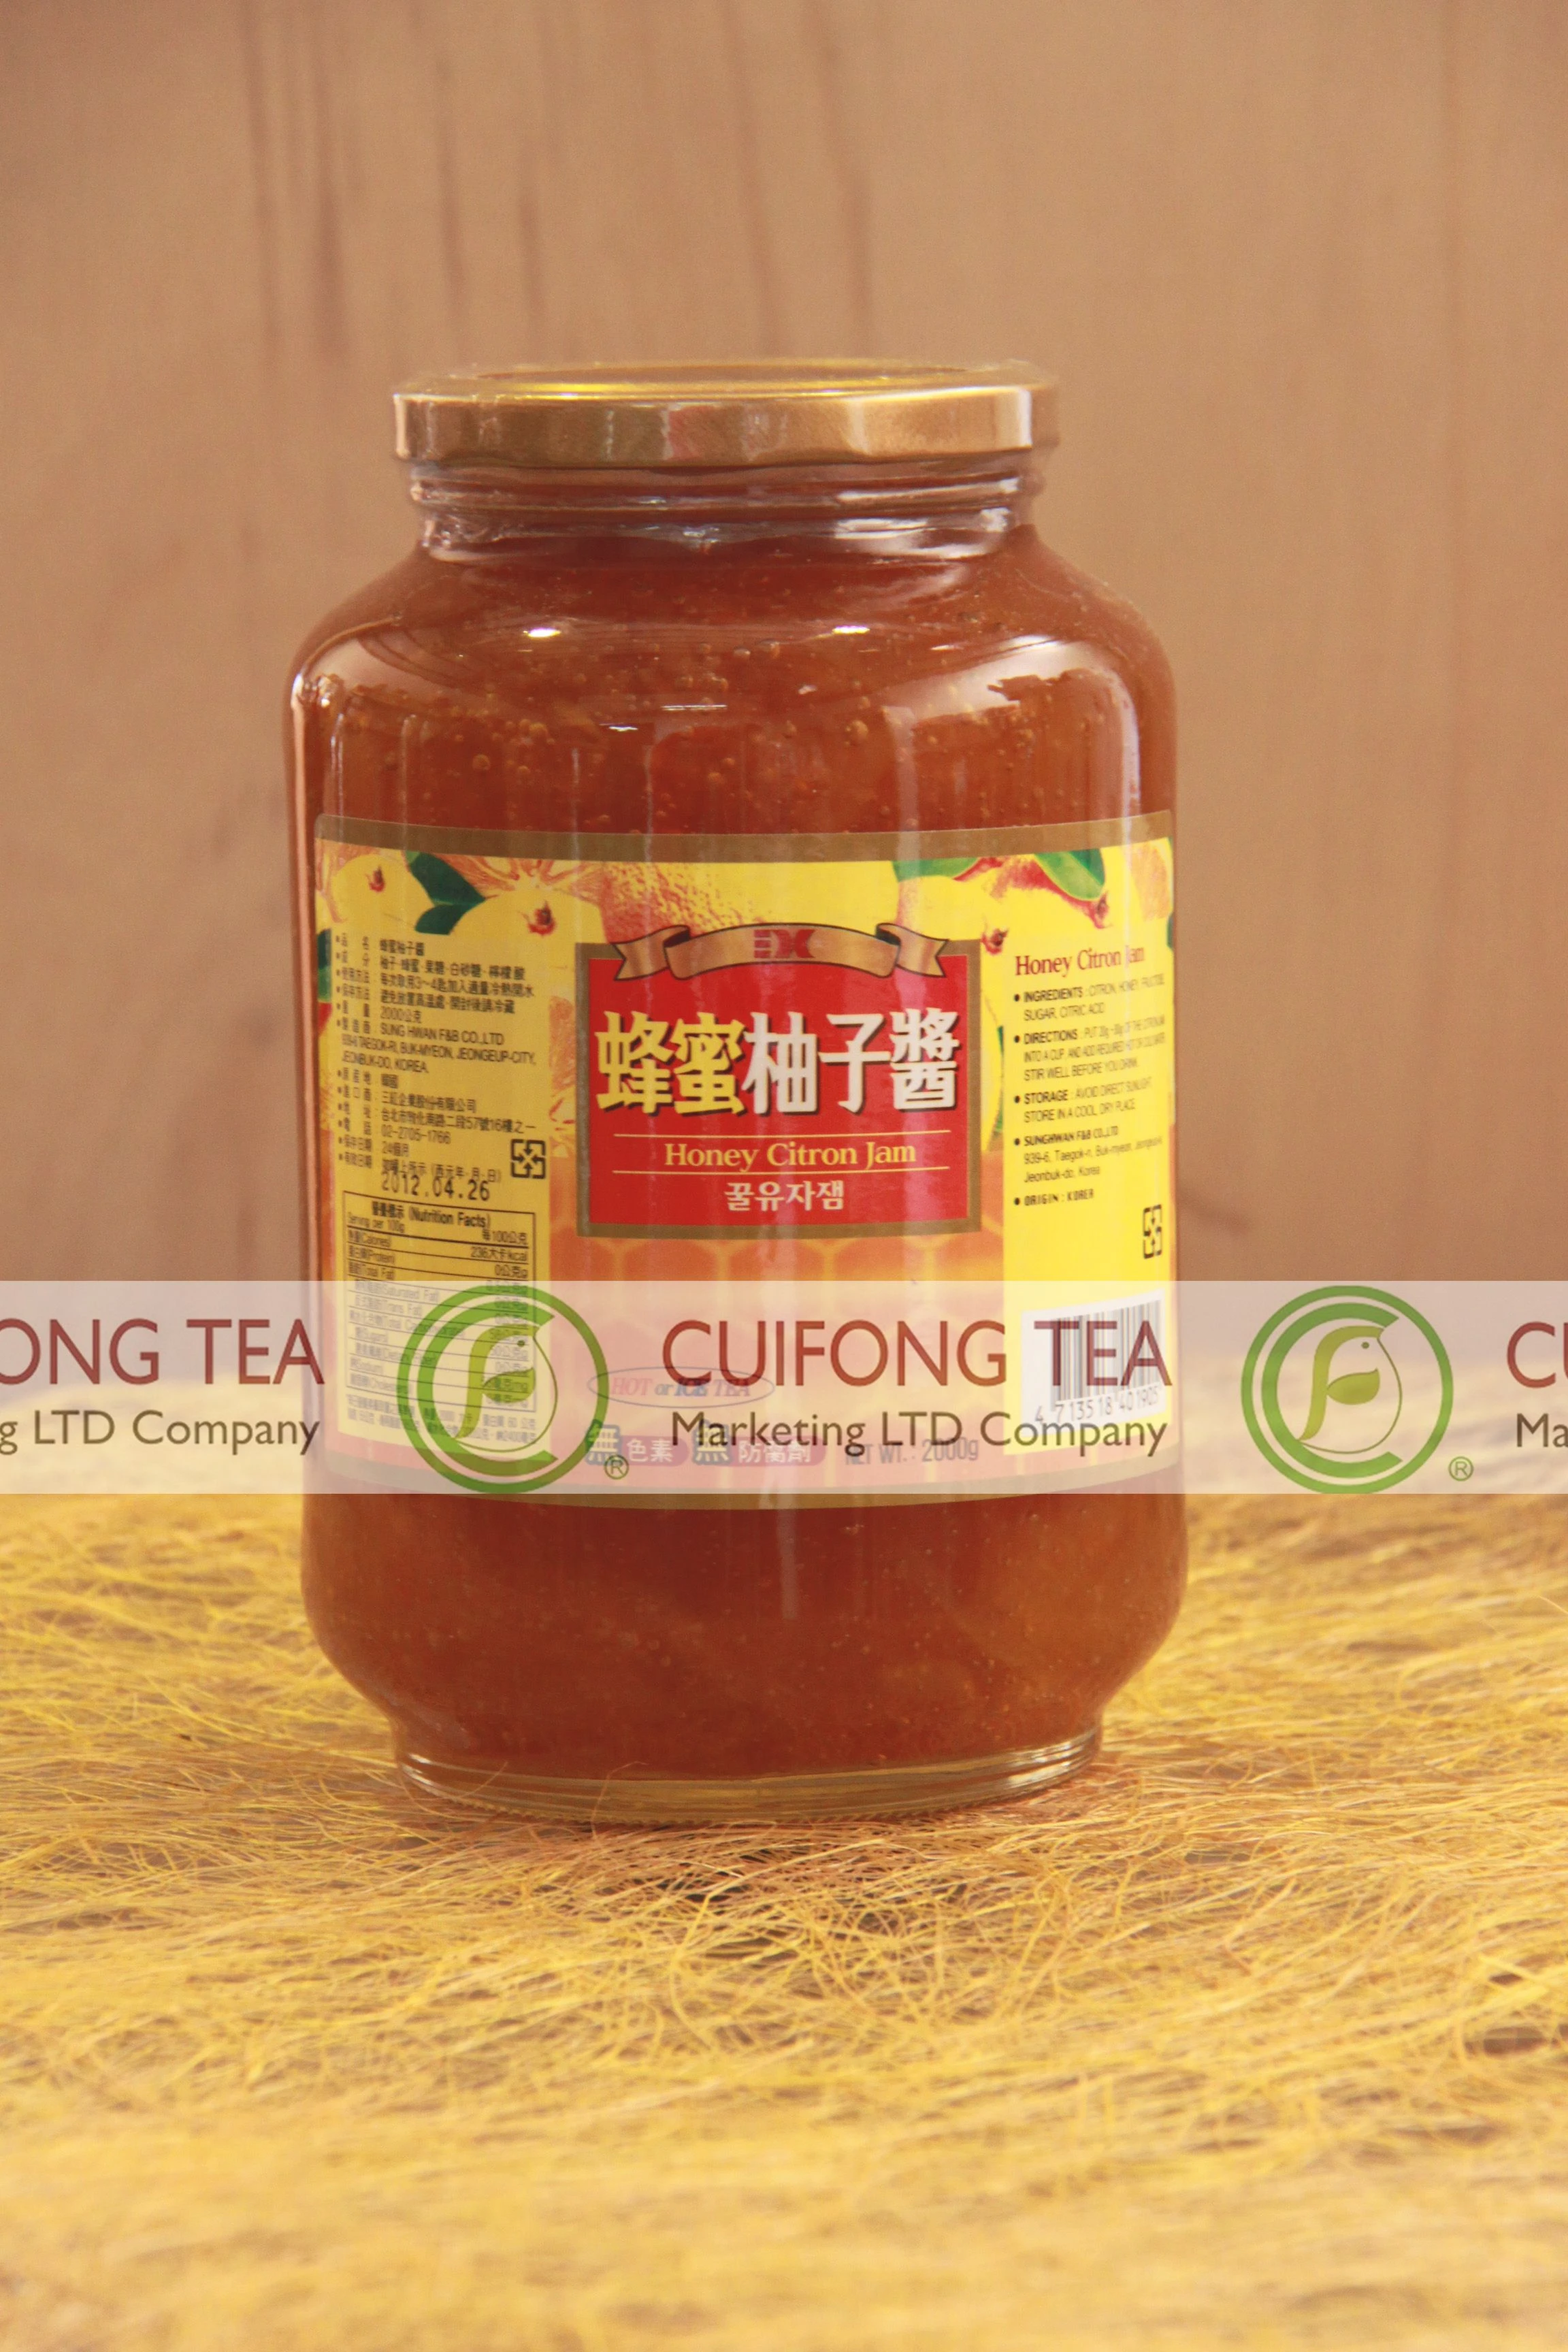 翠豐茶葉 - 蜂蜜柚子醬